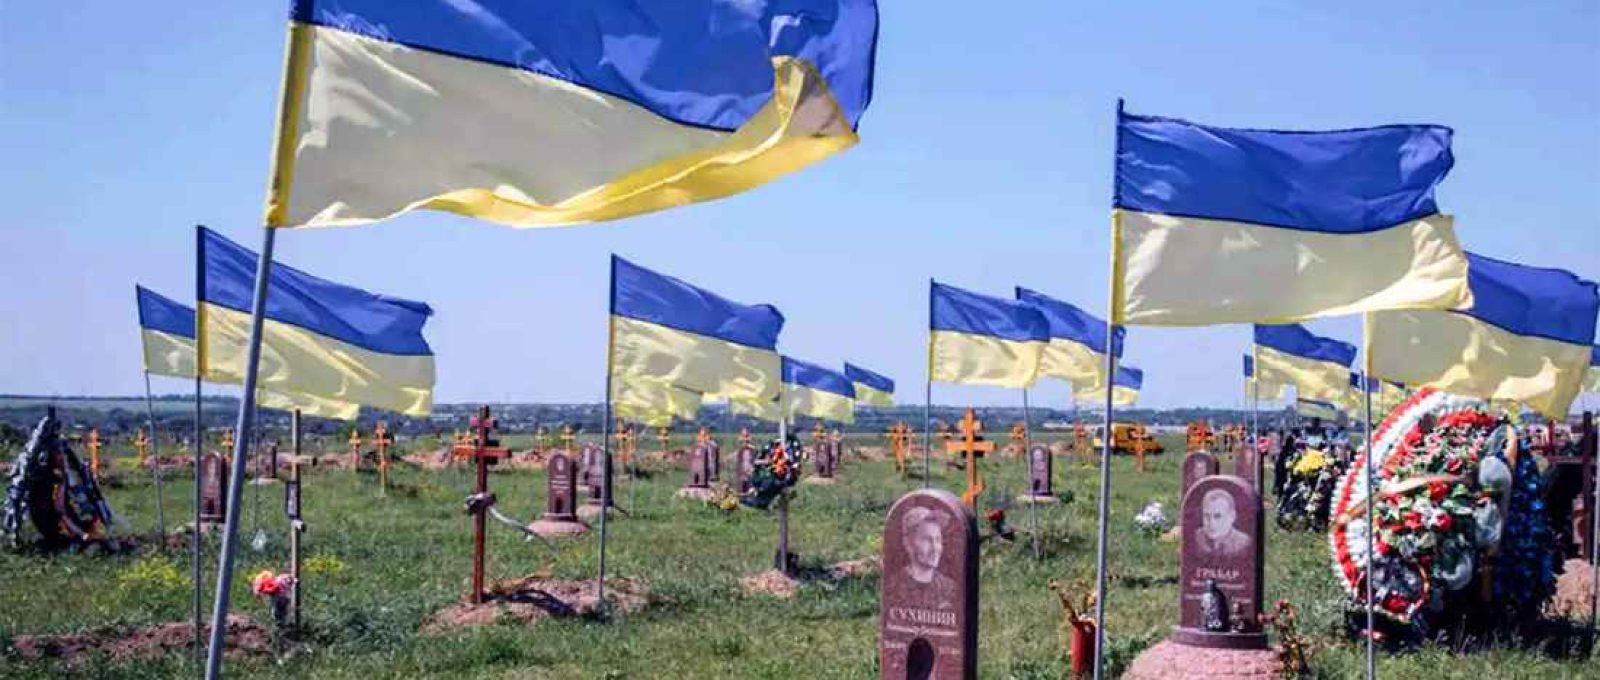 Cemitério ucraniano de mortos na guerra. Estimativas indicam mais de 100 mil baixas ucranianas (Twitter via Asia Times).